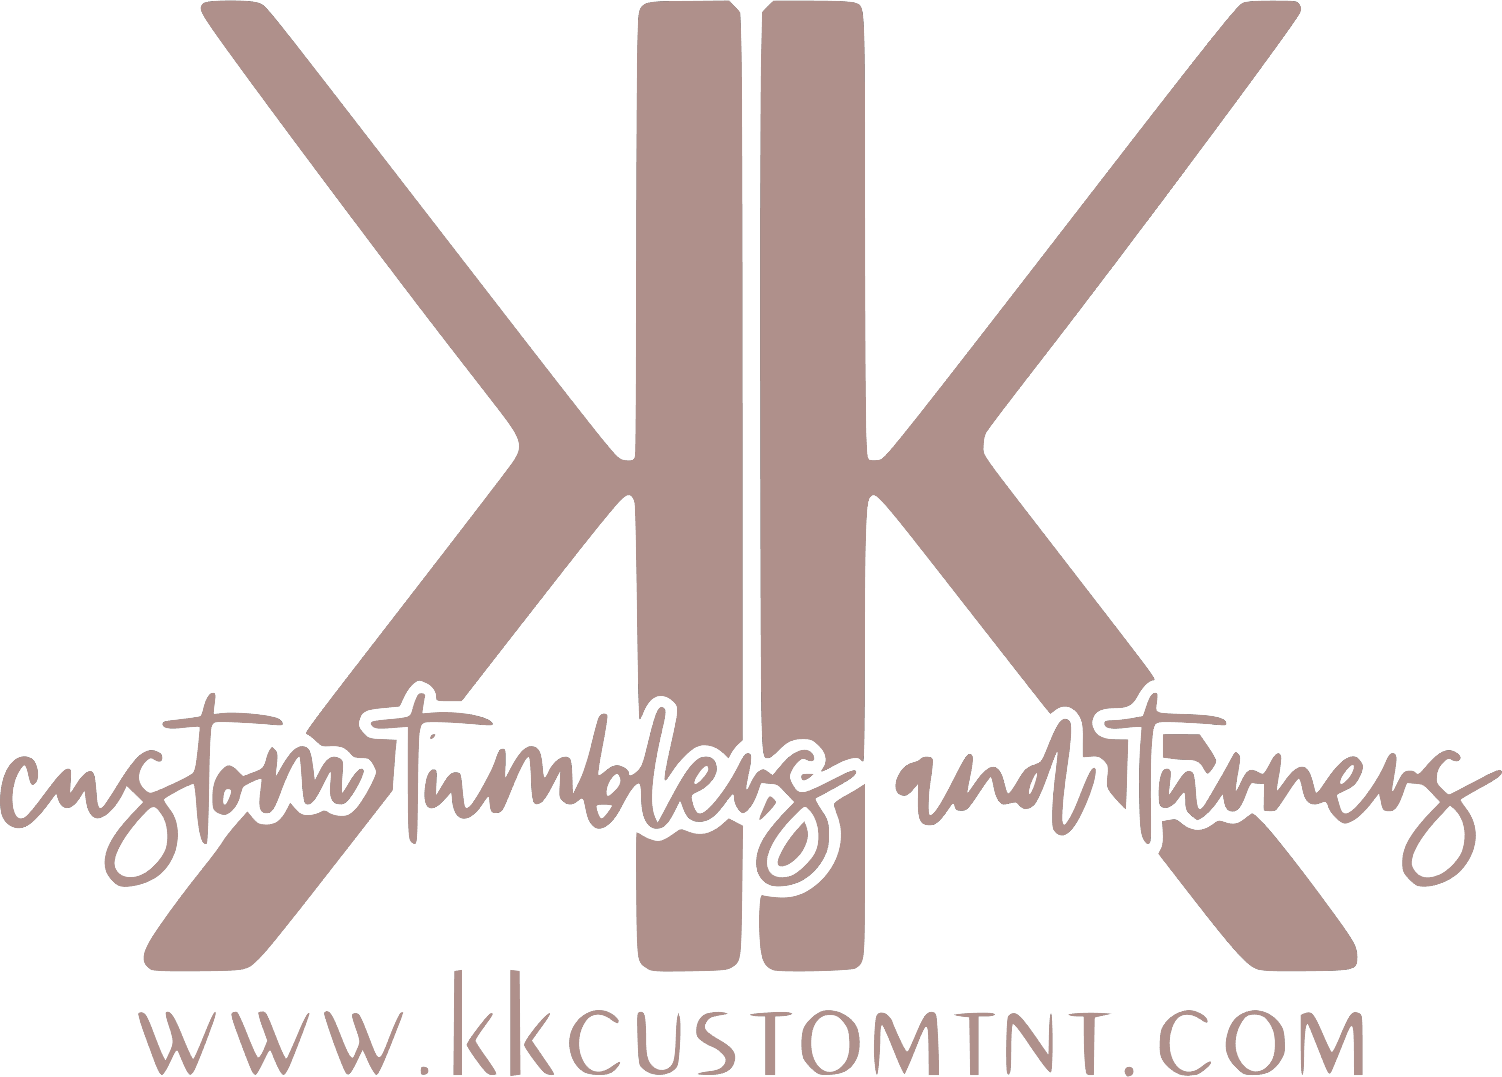 Single Cup Turner – KK Custom Tumblers & Turners